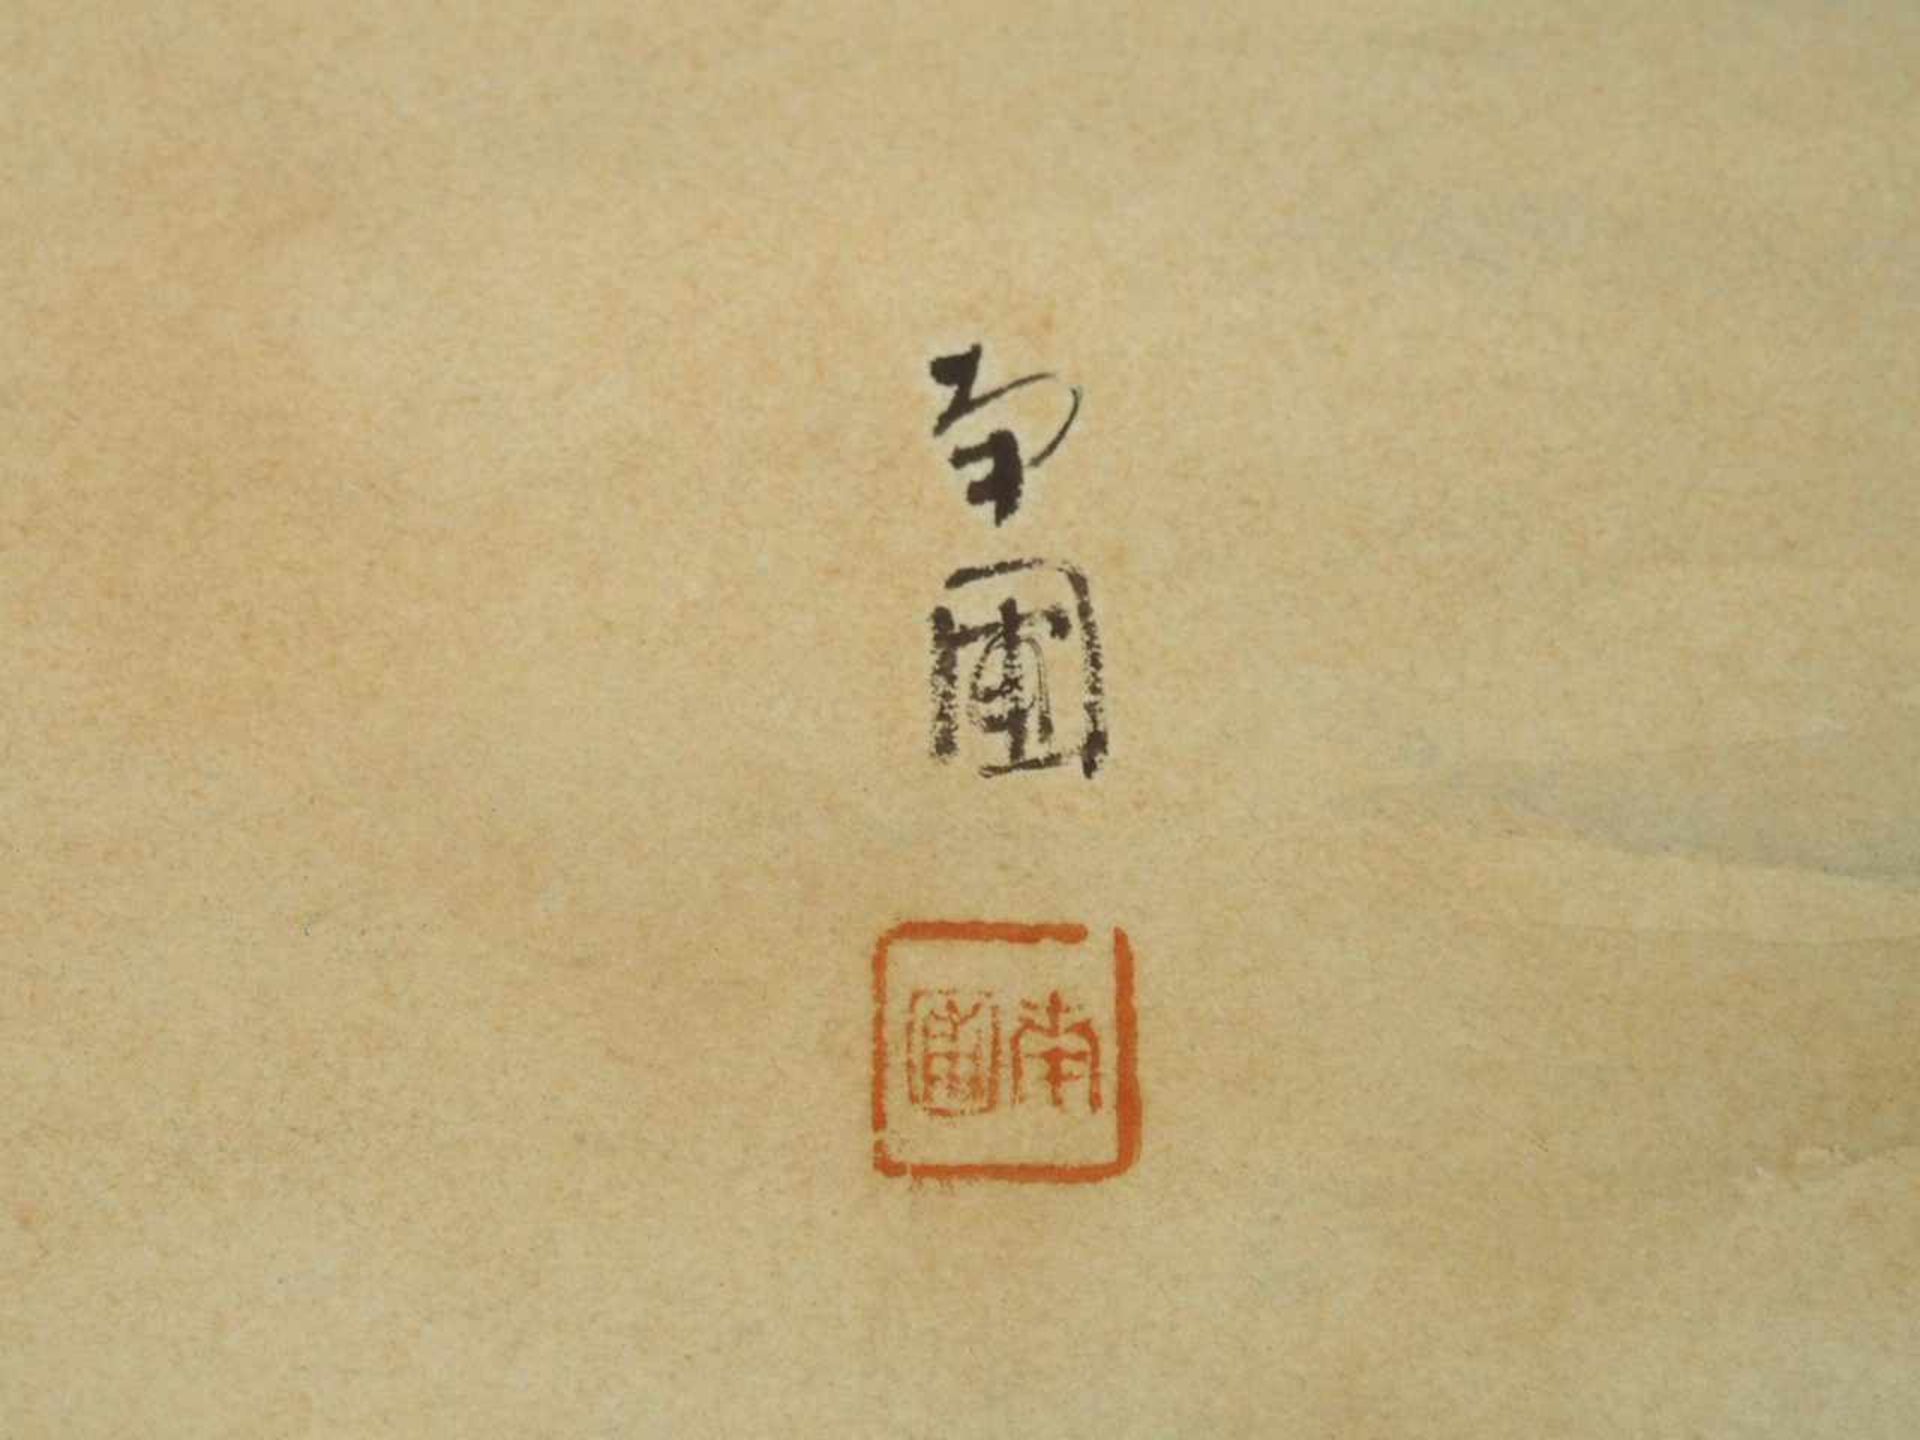 JAPANISCHER MEISTERum 1900Koi-FischeAquarell auf Papier, signiert, rote Stempelmarke, 38 x 50 cm, - Bild 3 aus 3